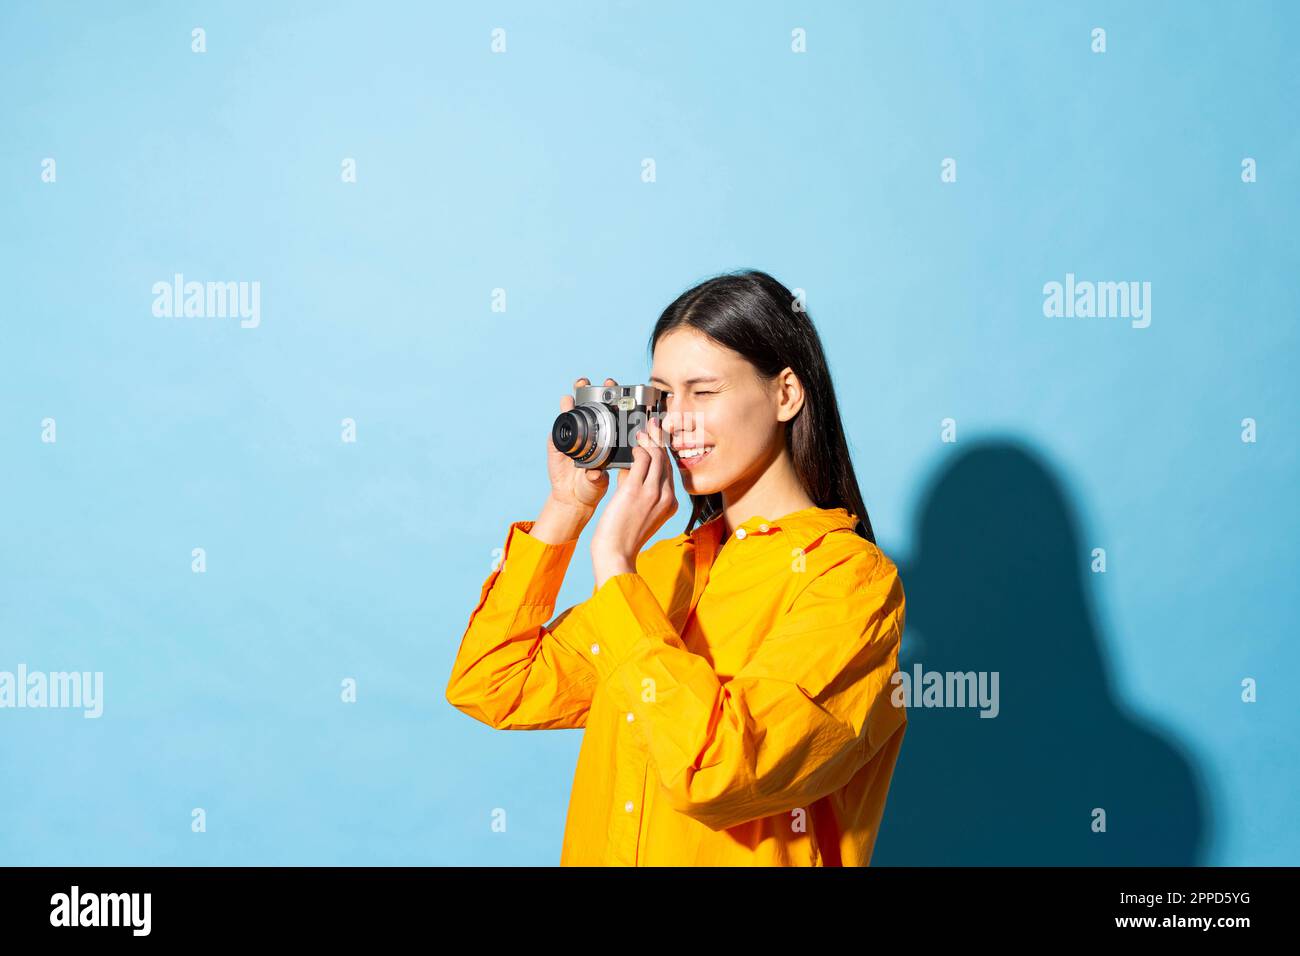 Junge Frau, die vor einem farbigen Hintergrund ein Foto durch die Kamera klickt Stockfoto